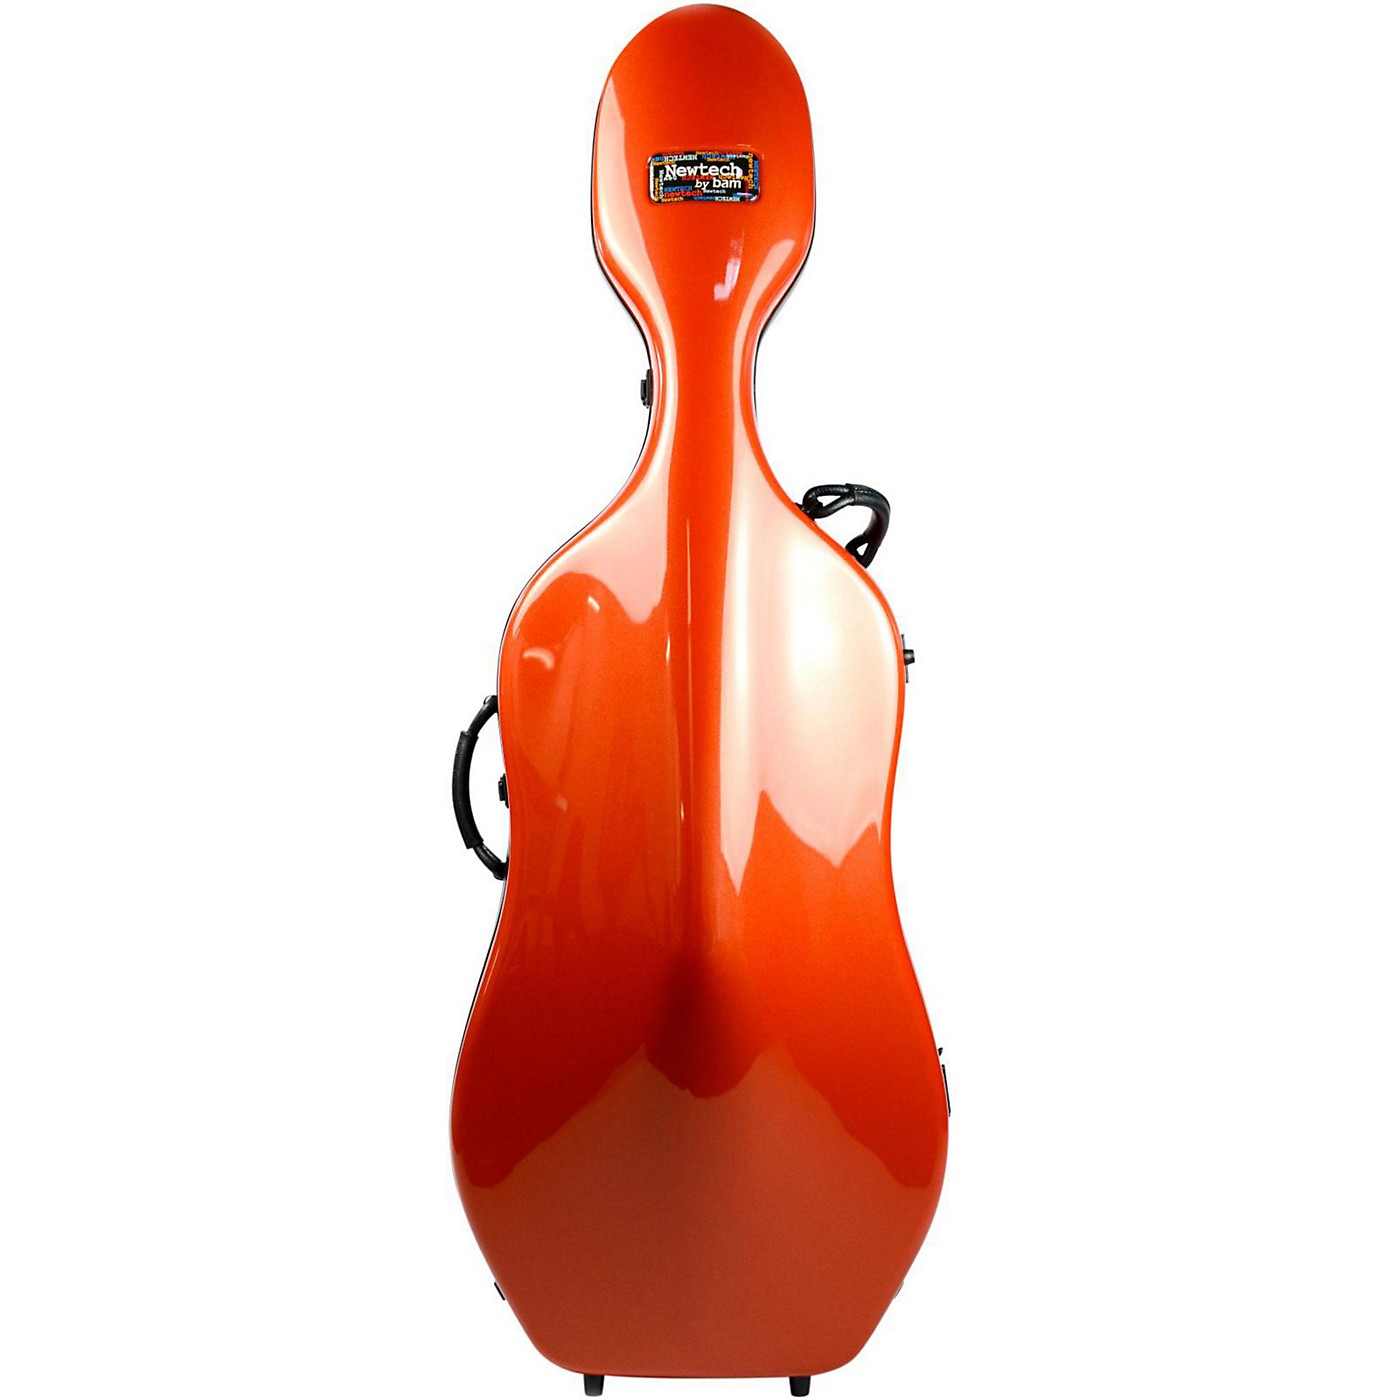 Bam 1002NW Newtech Cello Case With Wheels thumbnail